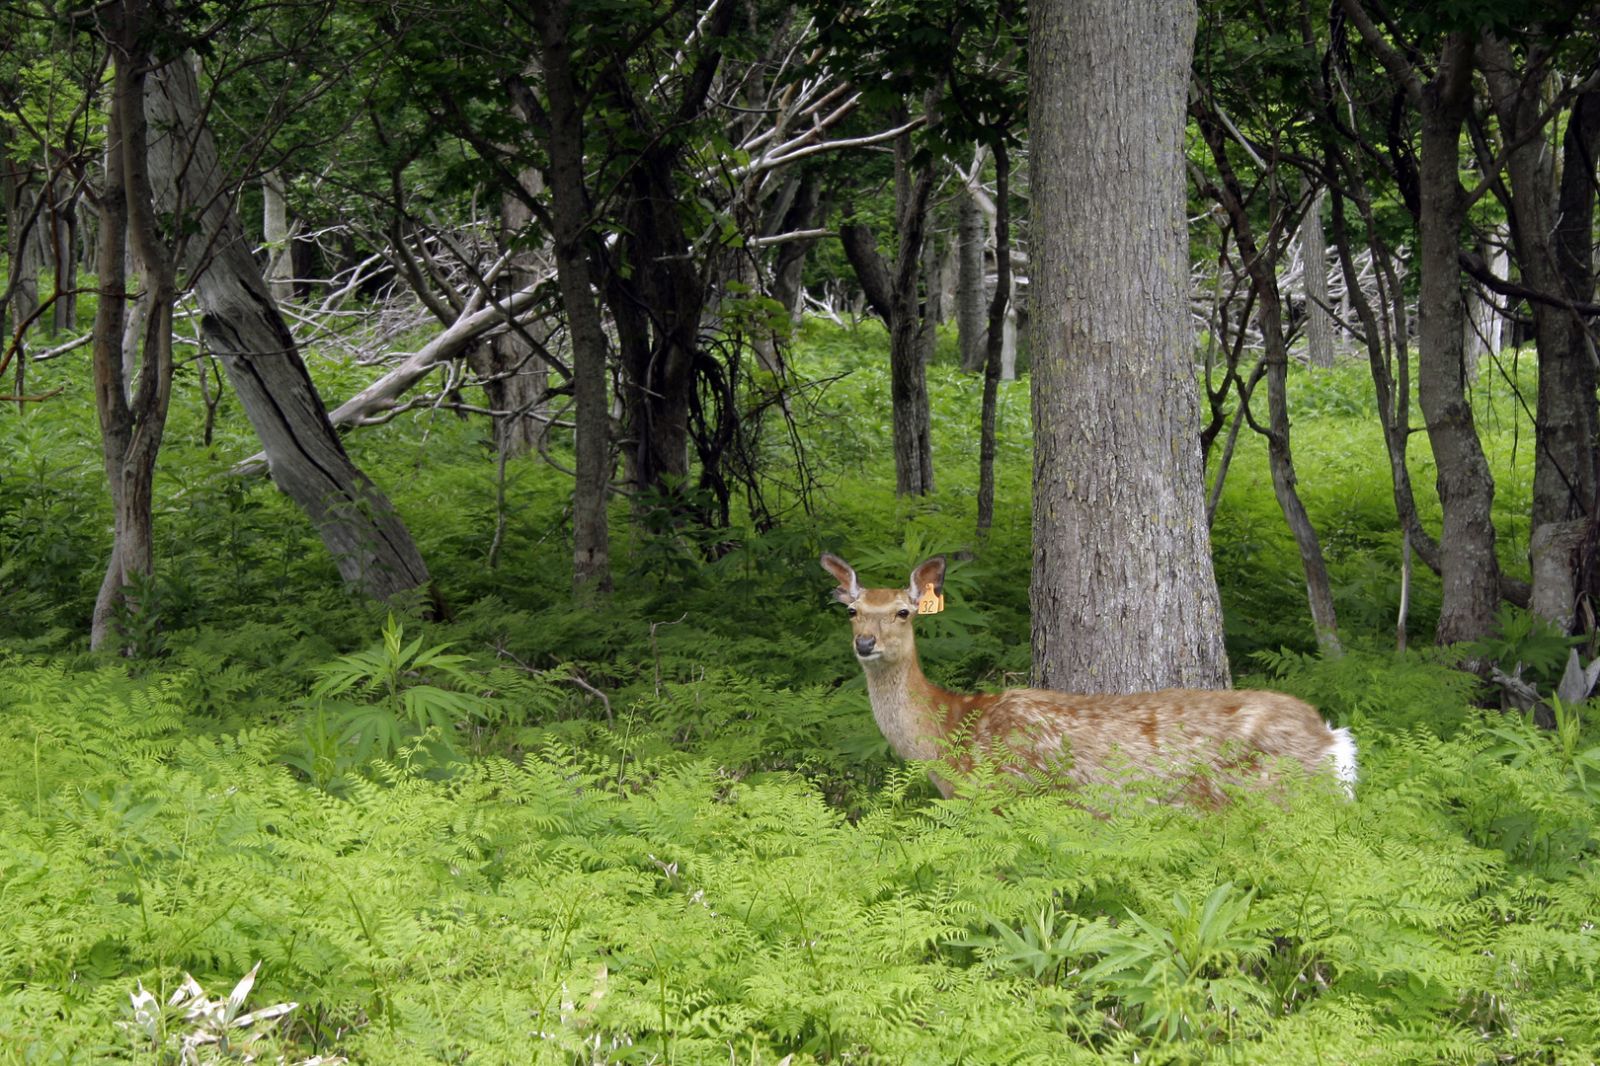 Công viên quốc gia Shiretoko cũng là một khu bảo tồn thiên nhiên quan trọng của Nhật Bản với nhiều loại động vật hoang dã sinh sống